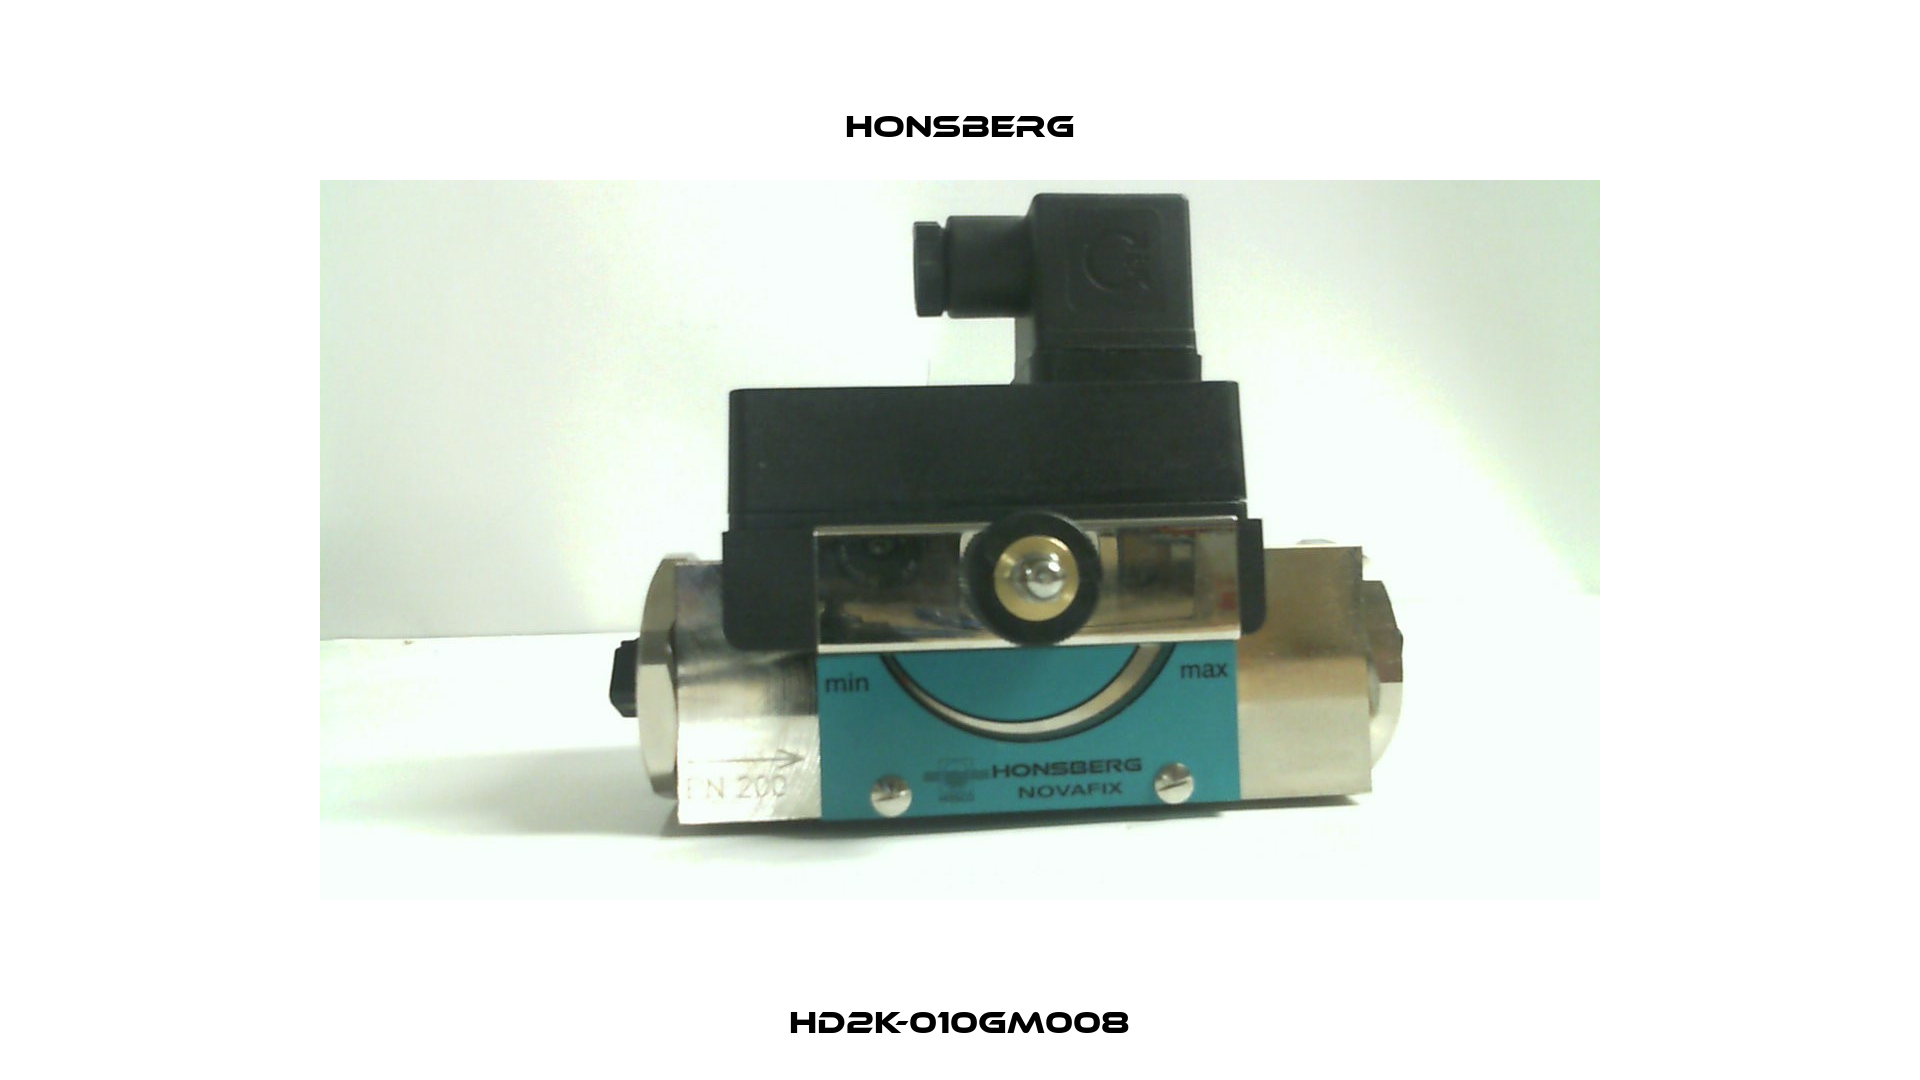 HD2K-010GM008 Honsberg